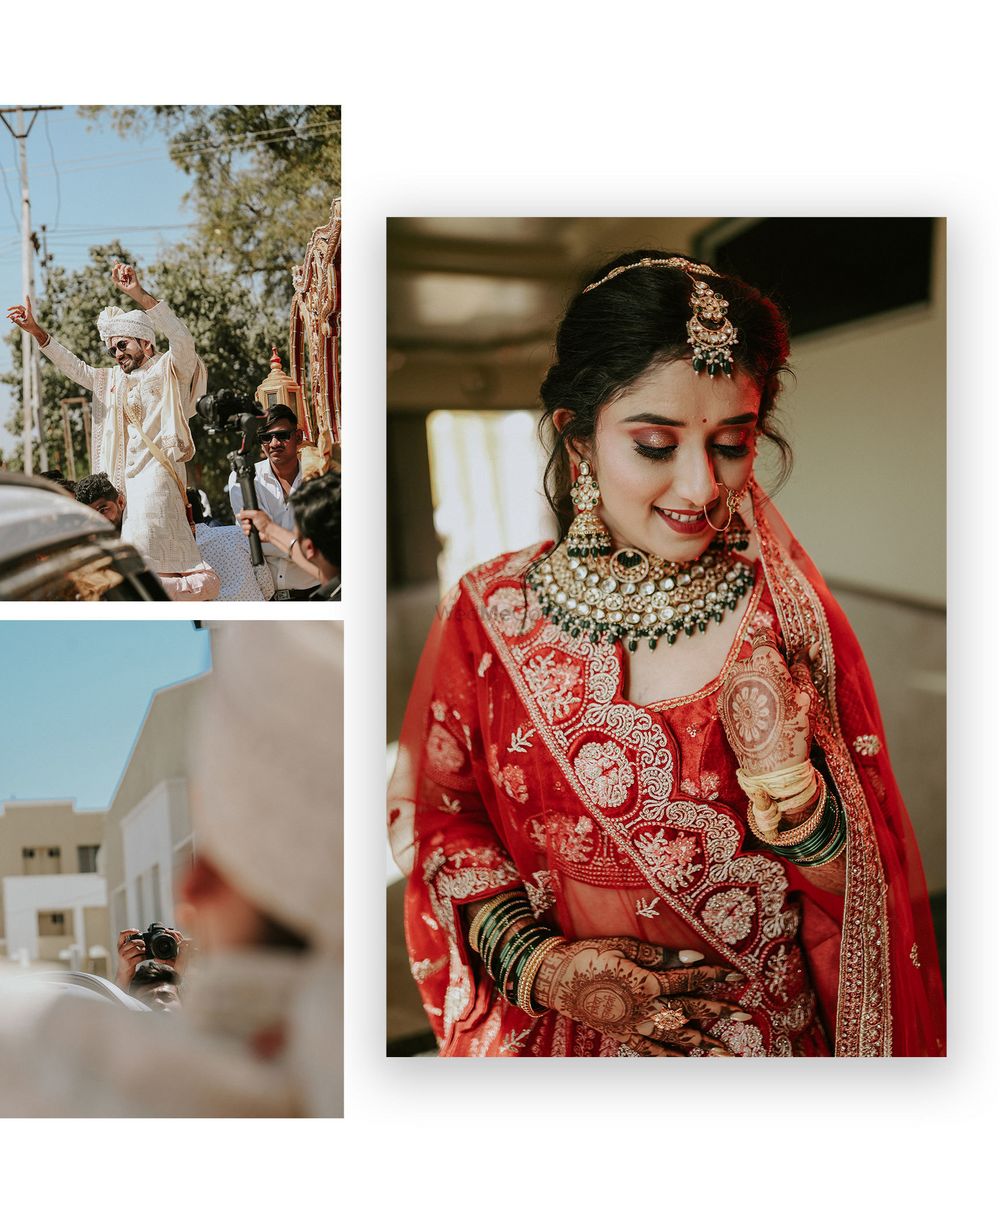 Photo From Jitesh & Rajnandini wedding - By Durgesh Shahu Photography